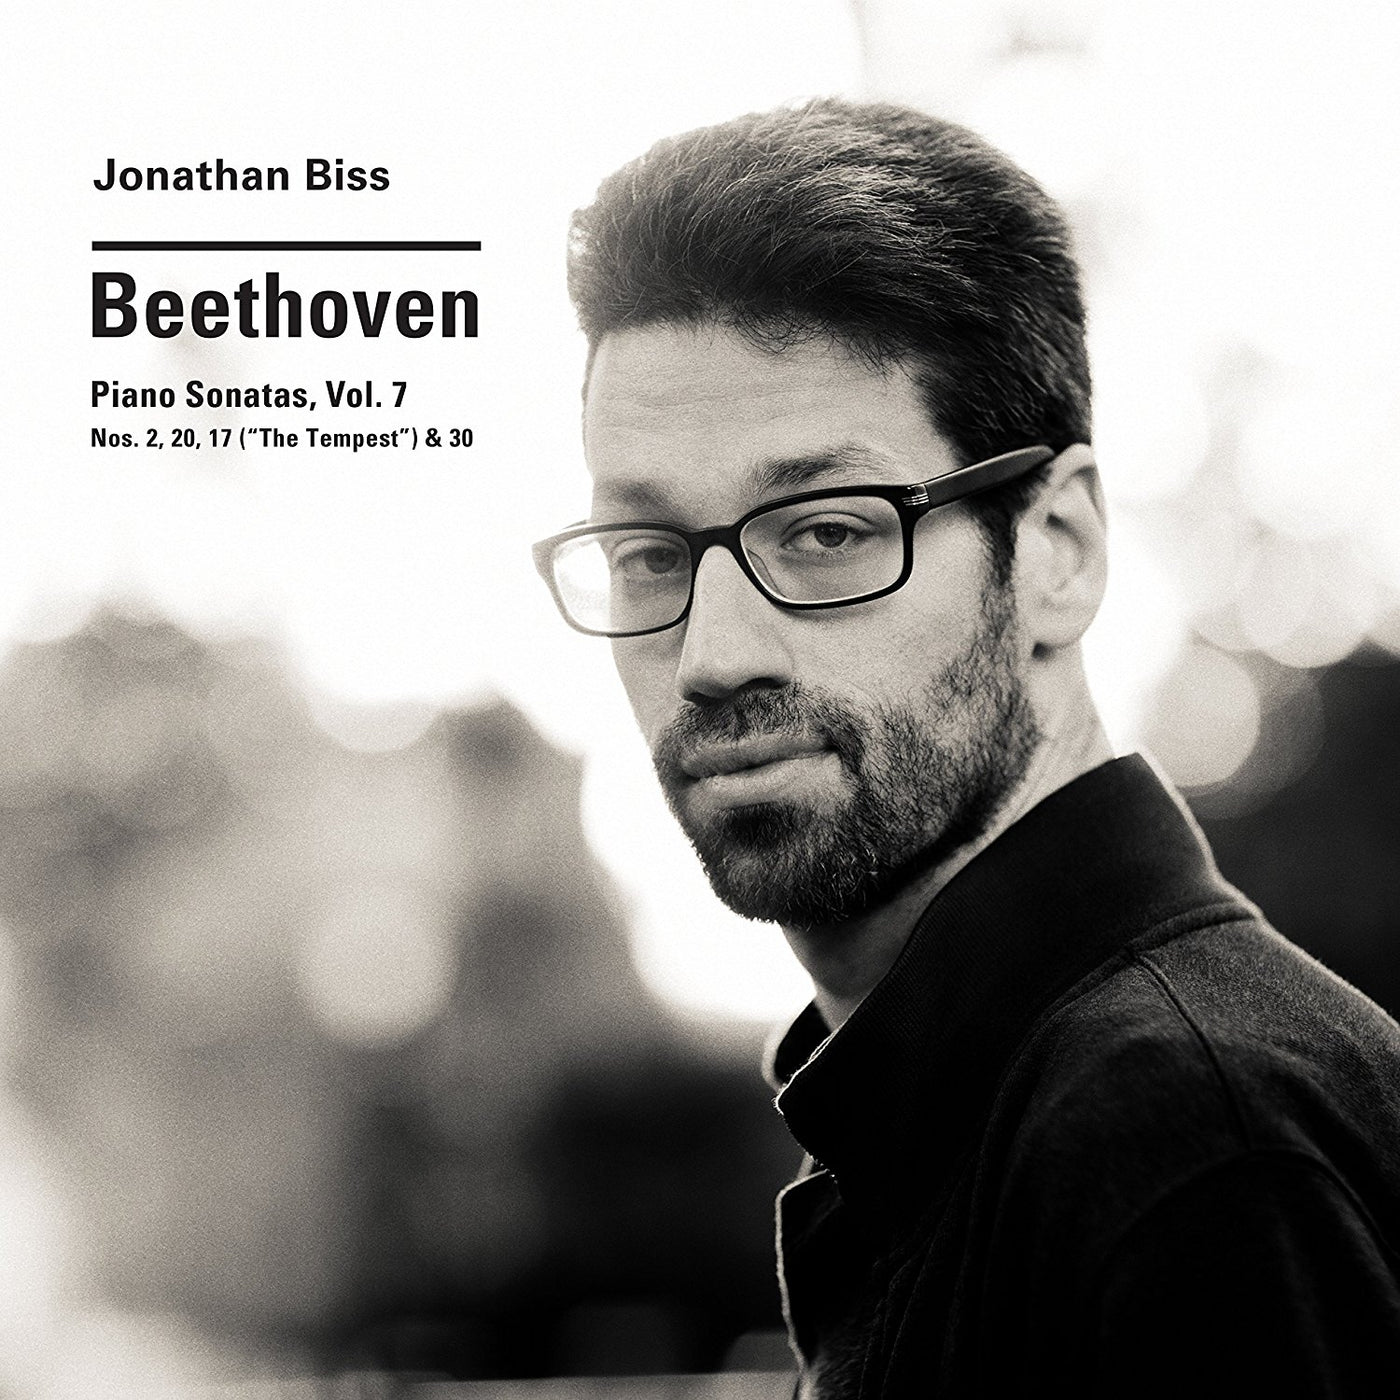 Beethoven: Piano Sonatas, Vol. 7 by Jonathan Biss